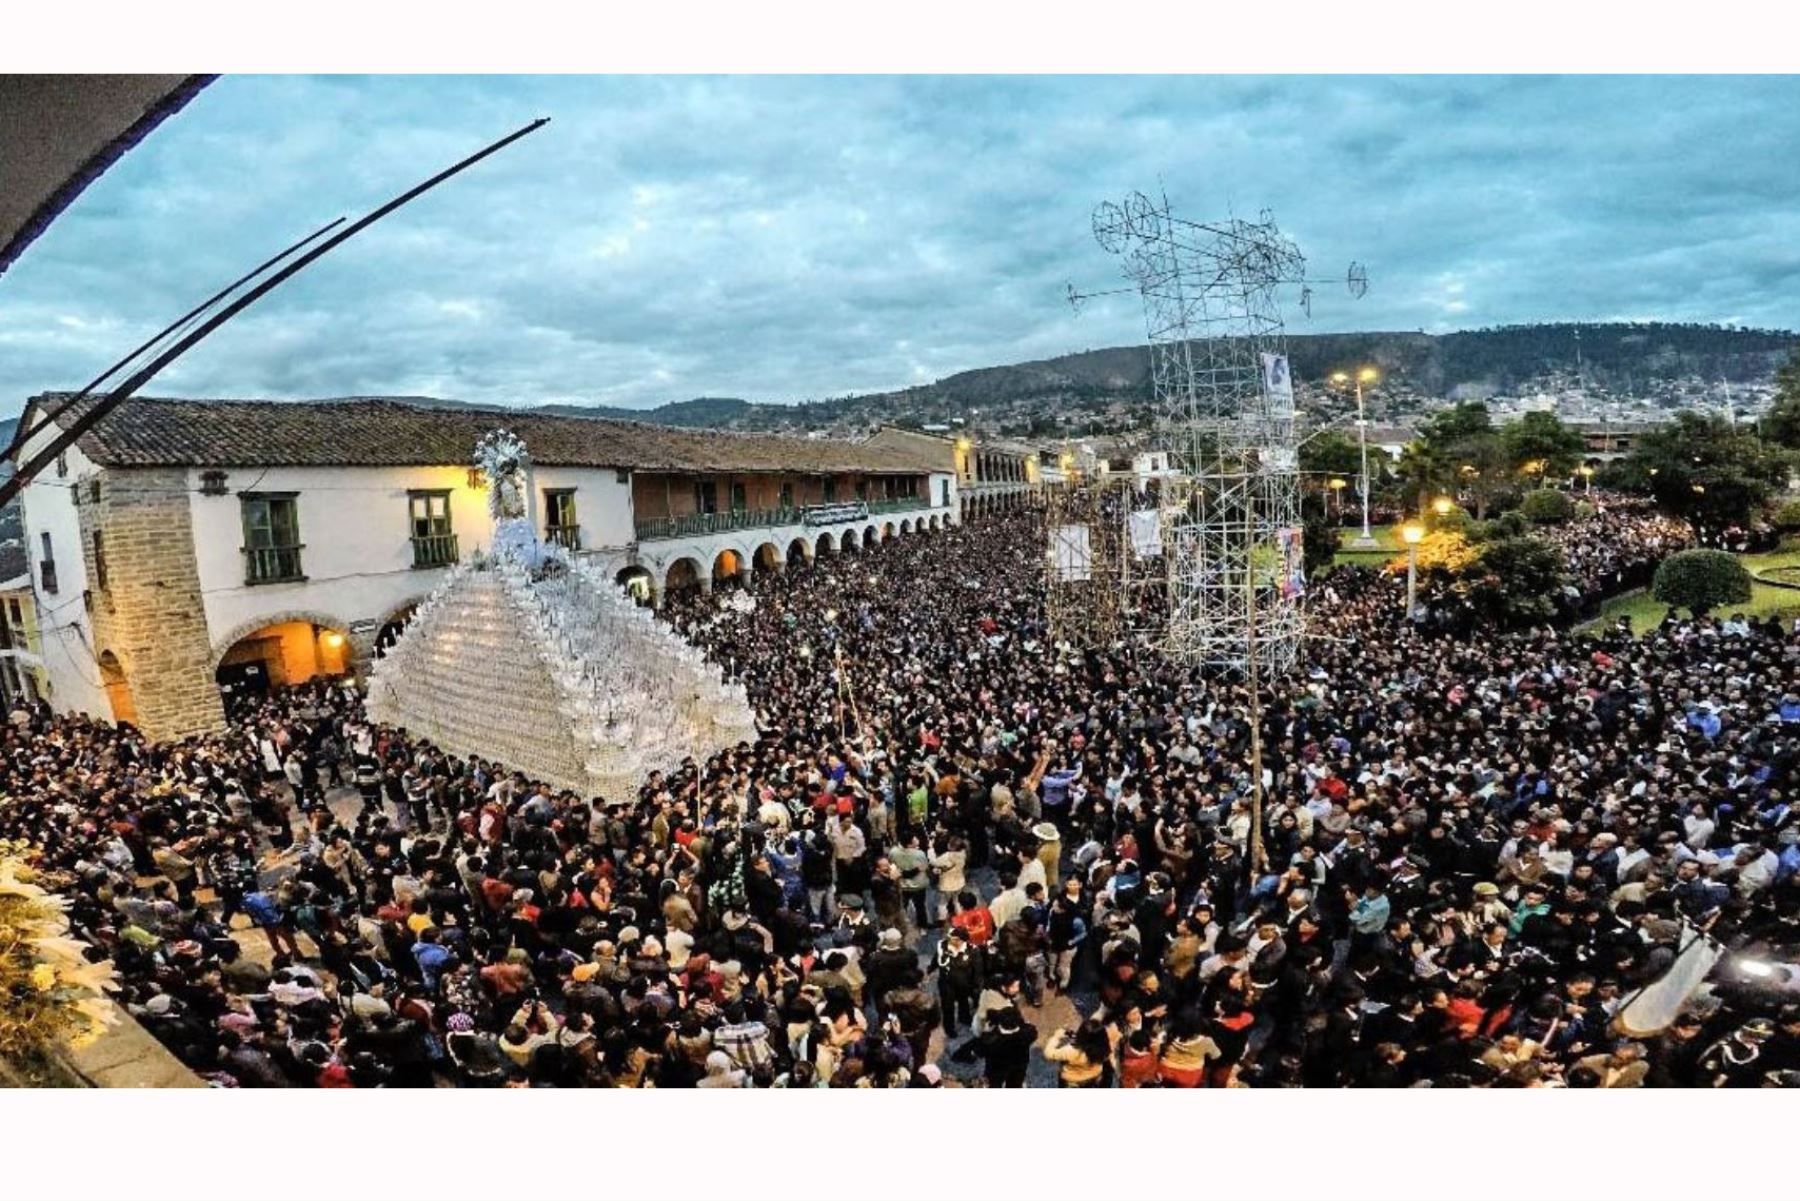 La ciudad de Huamanga espera recibir unos 20,000 turistas durante el feriado de Semana Santa. ANDINA/Carlos Lezama